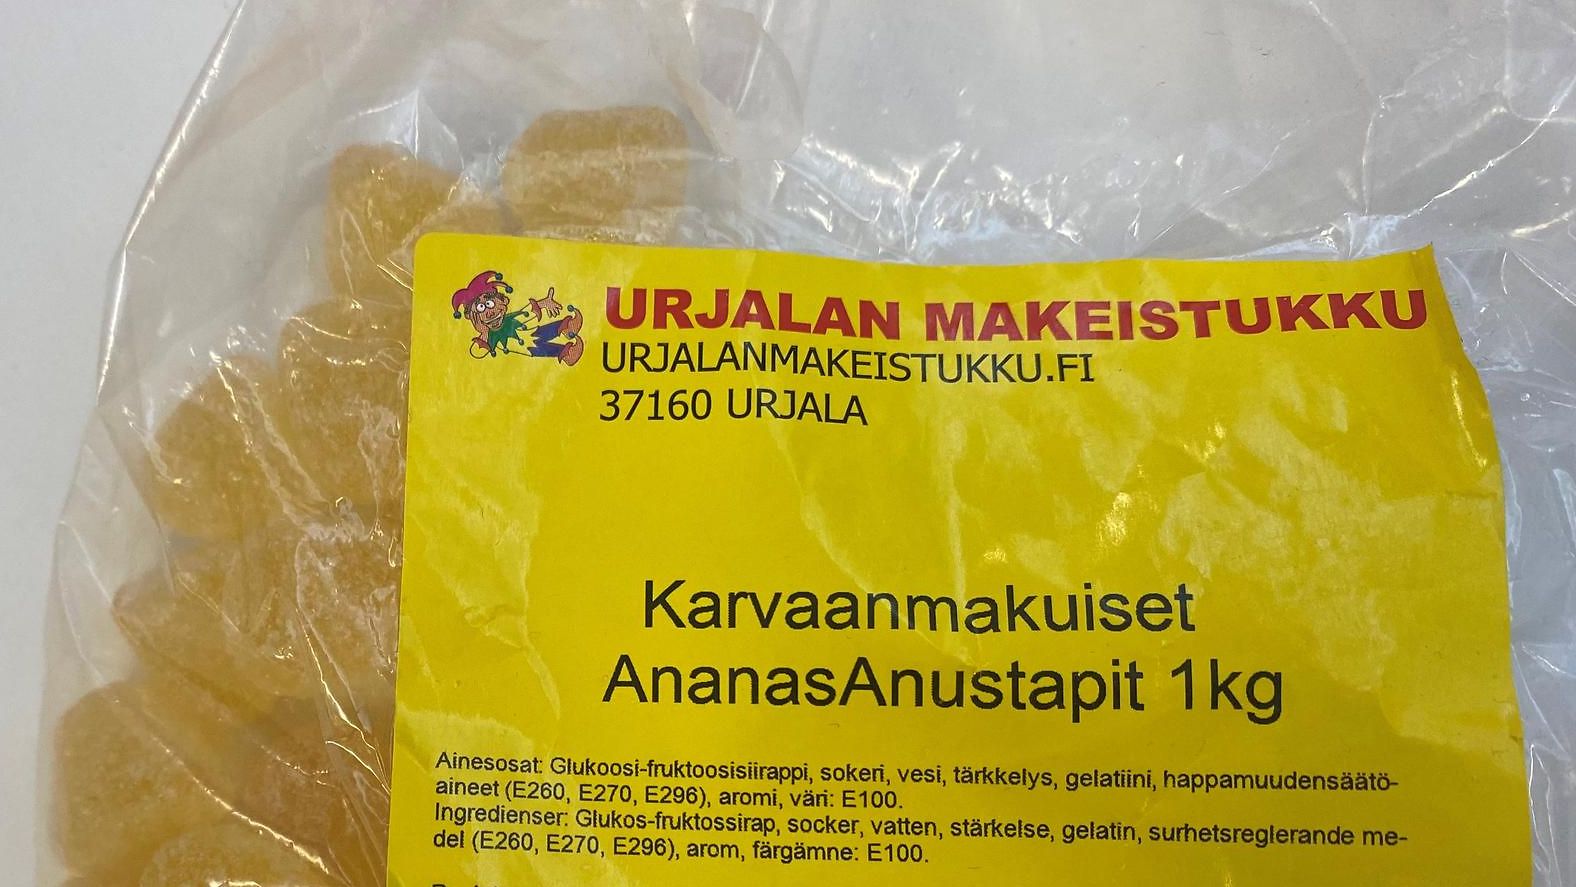 Urjalan Makeistukku sai huomautuksen hyvän tavan vastaisesta mainoksesta |  Makuja | MTV Uutiset